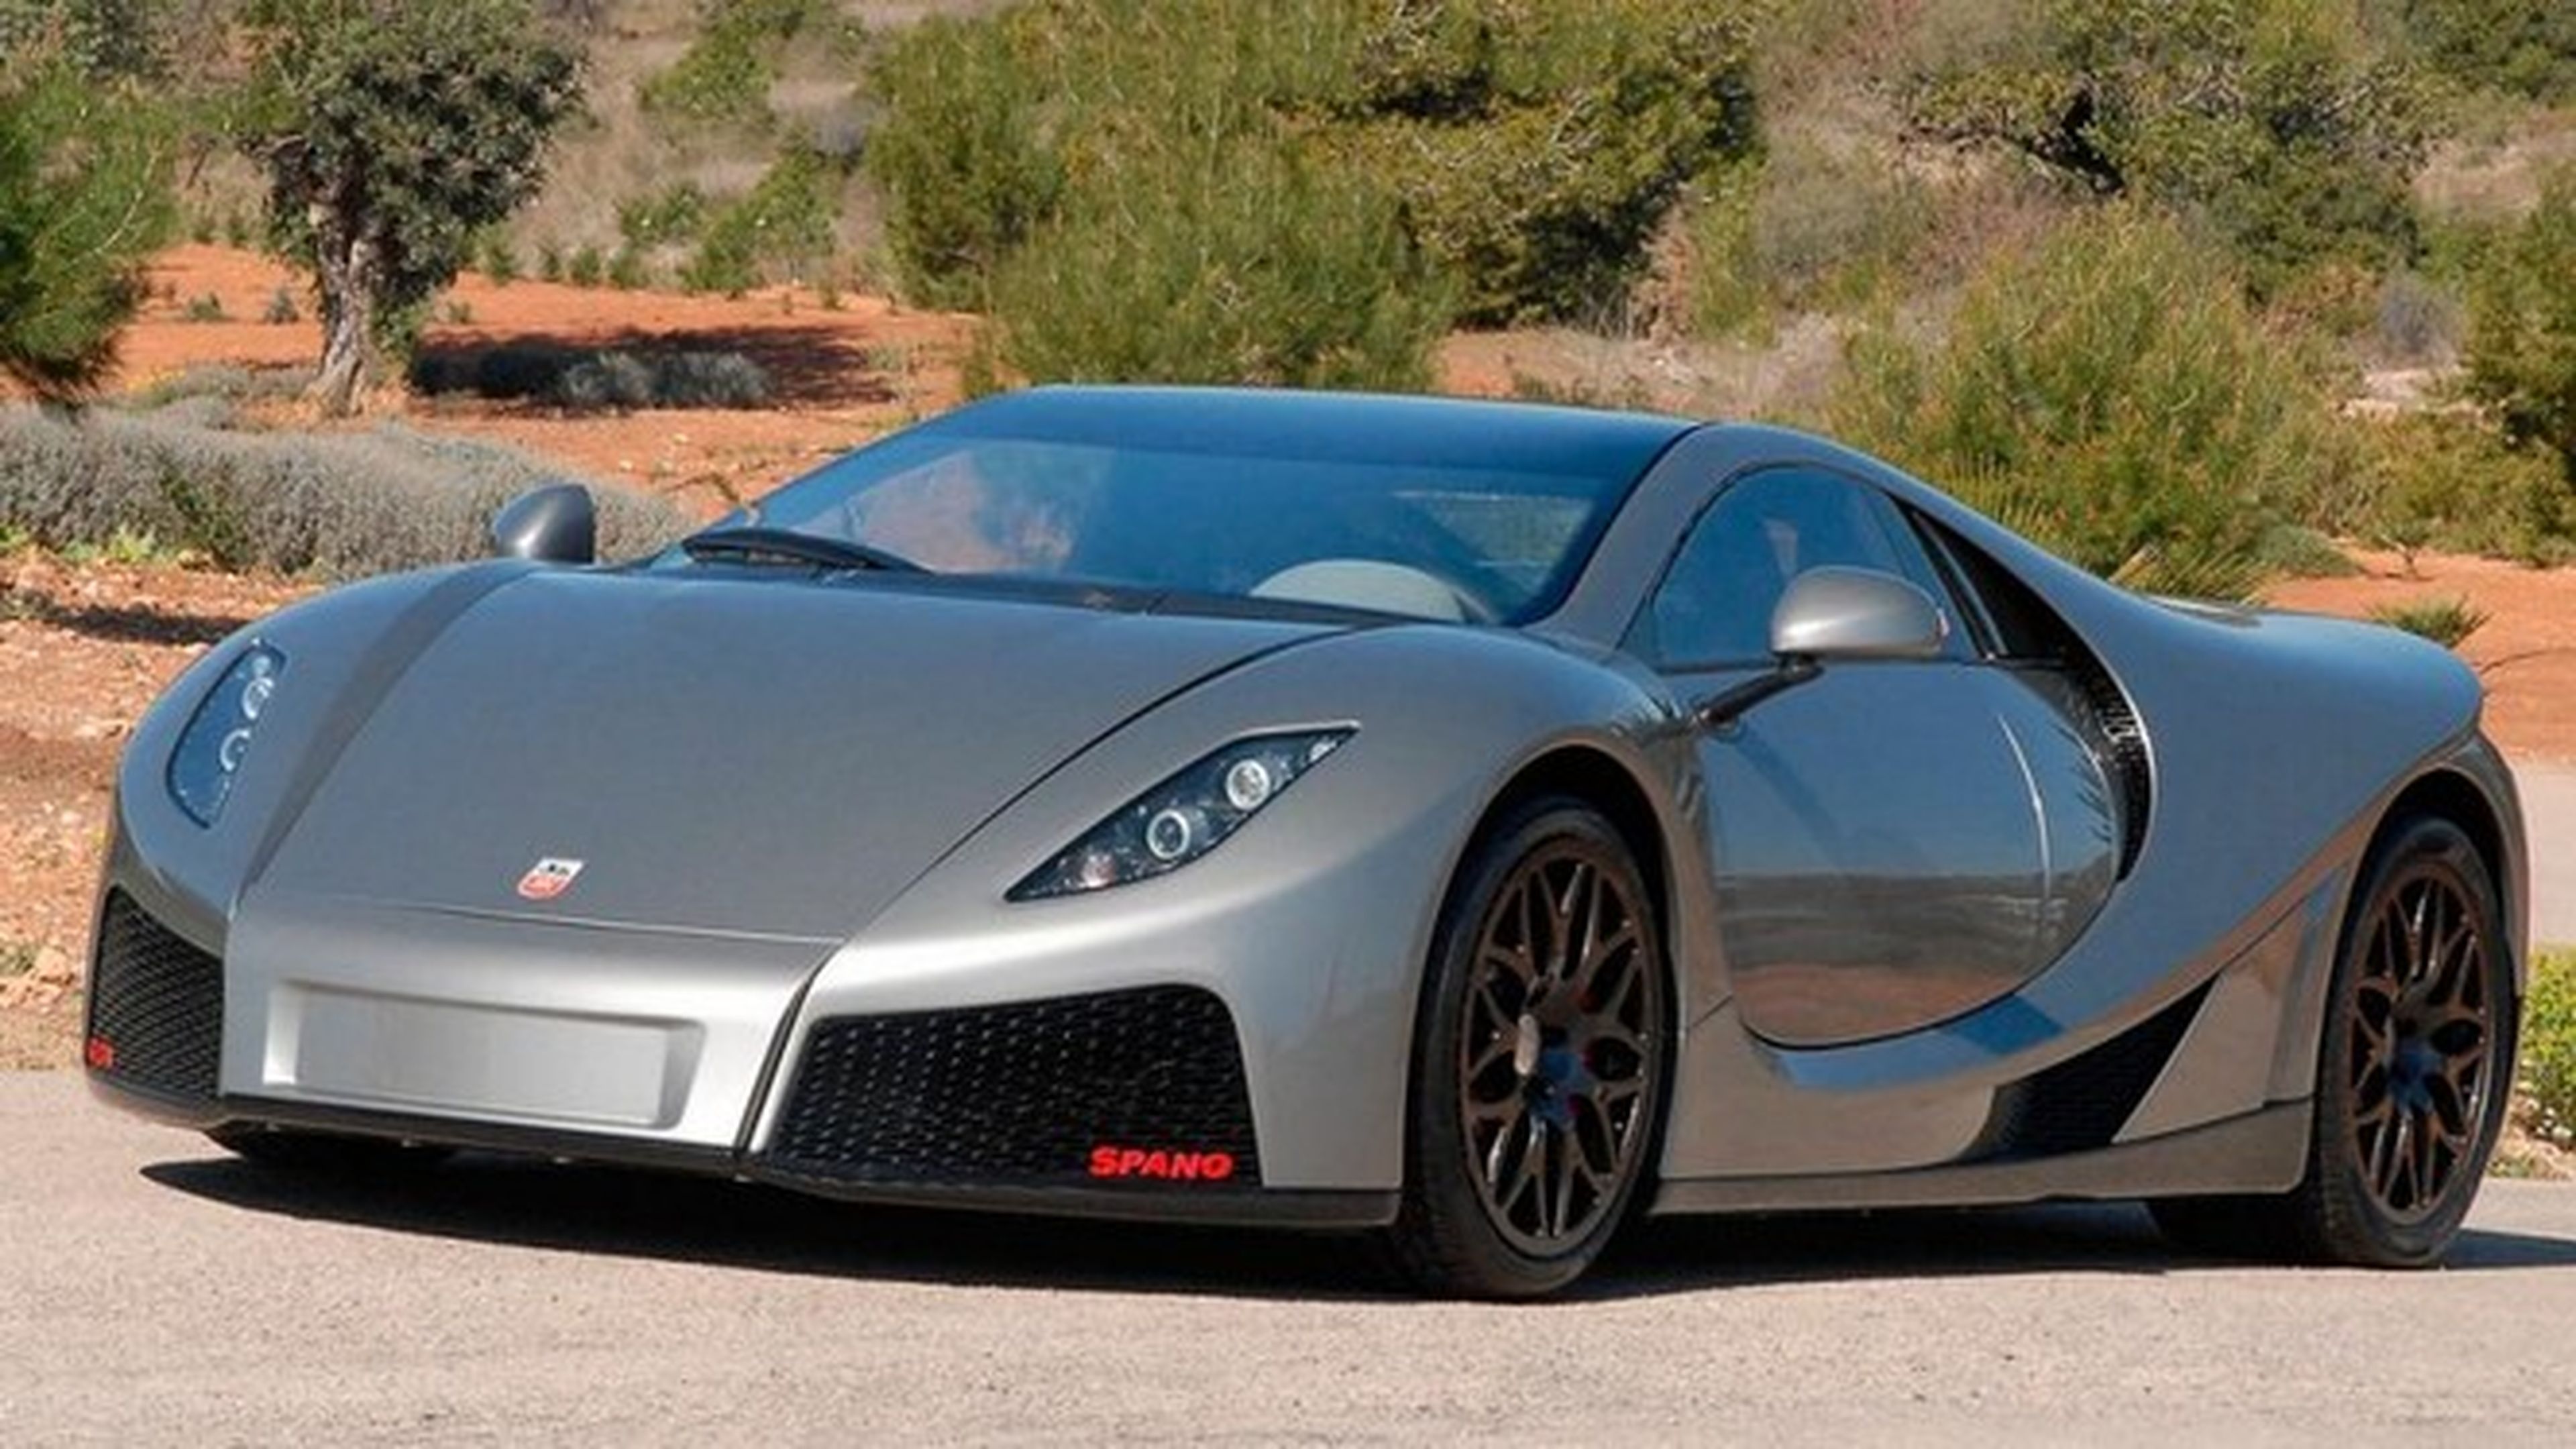 ¿Cuánto pagarías por este GTA Spano de 'Need for Speed'?